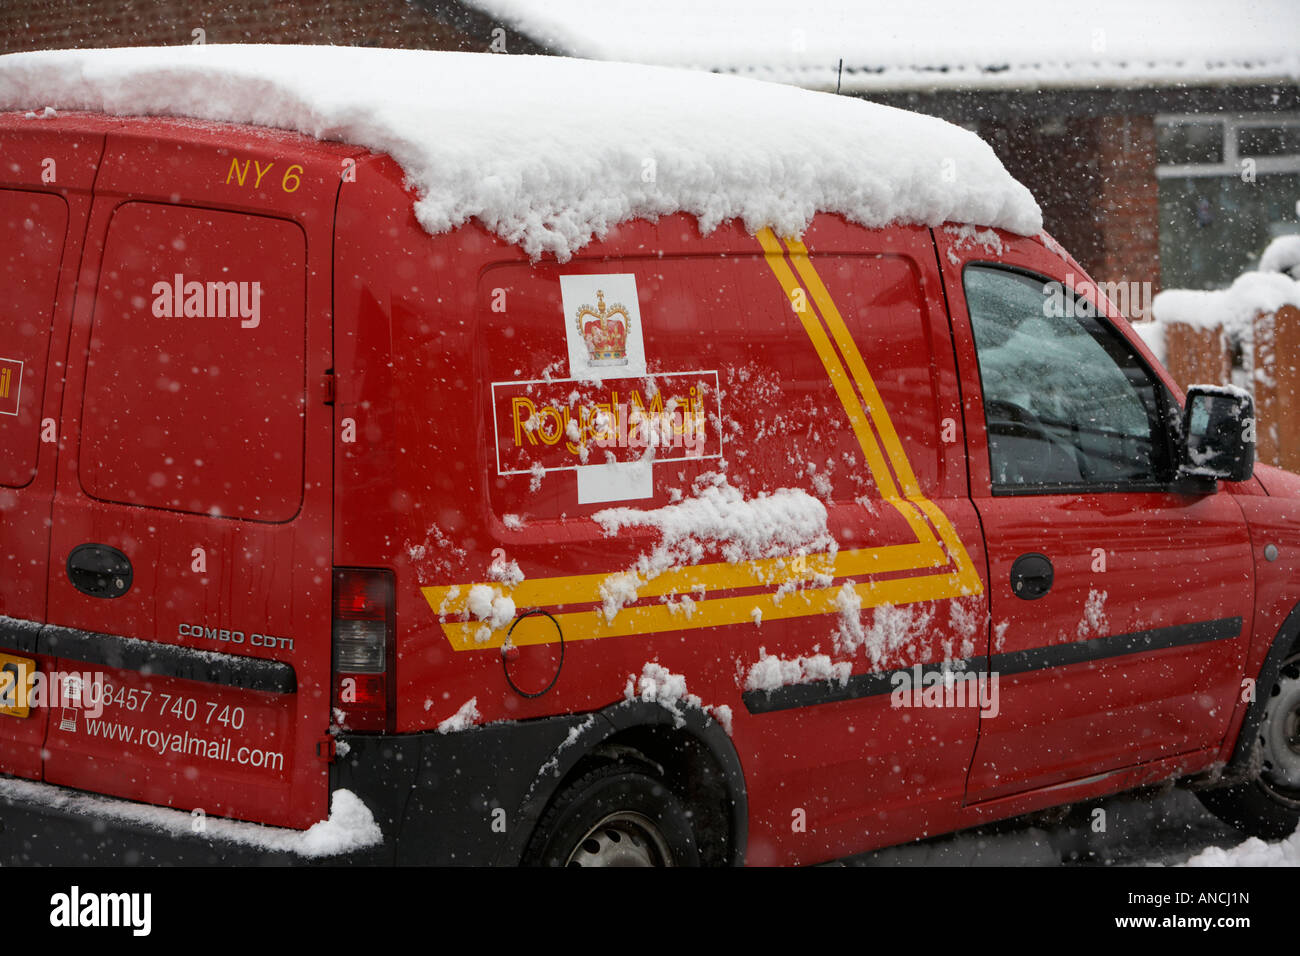 Royal mail delivery van couvertes de neige parqué au cours de tournées de livraison de courrier Banque D'Images